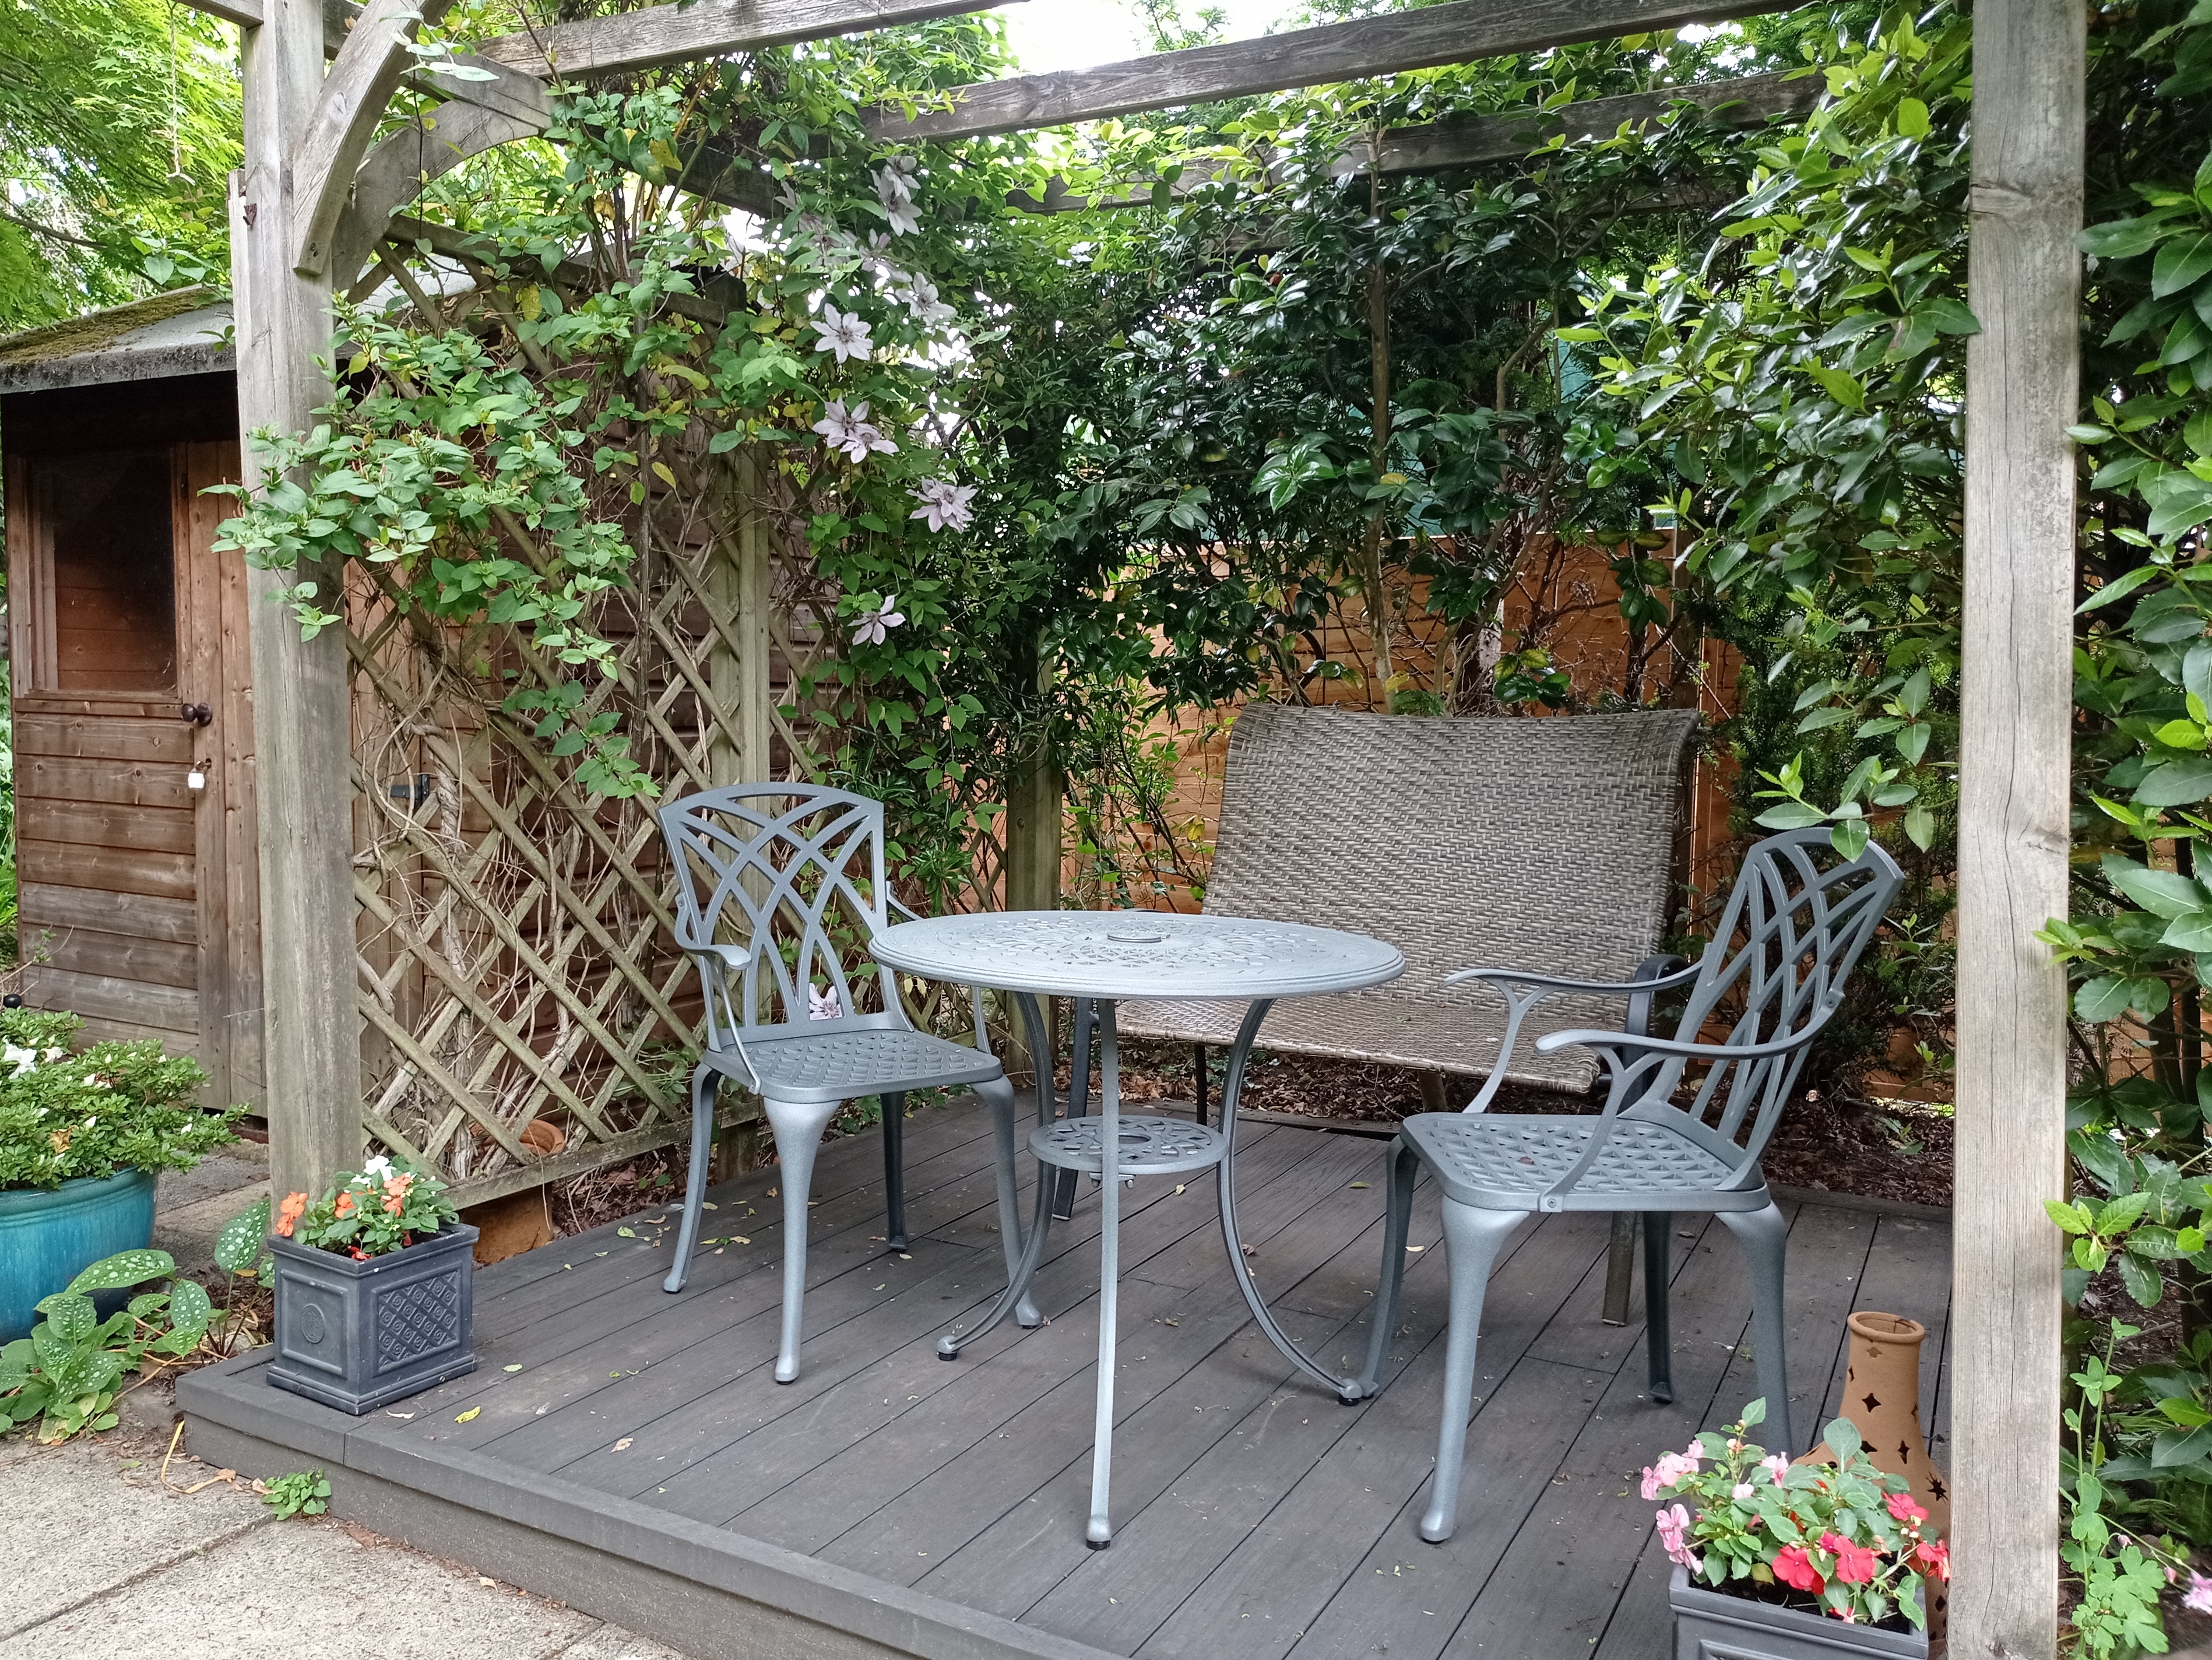 A Pergola over your Garden Furniture is Country Garden 101